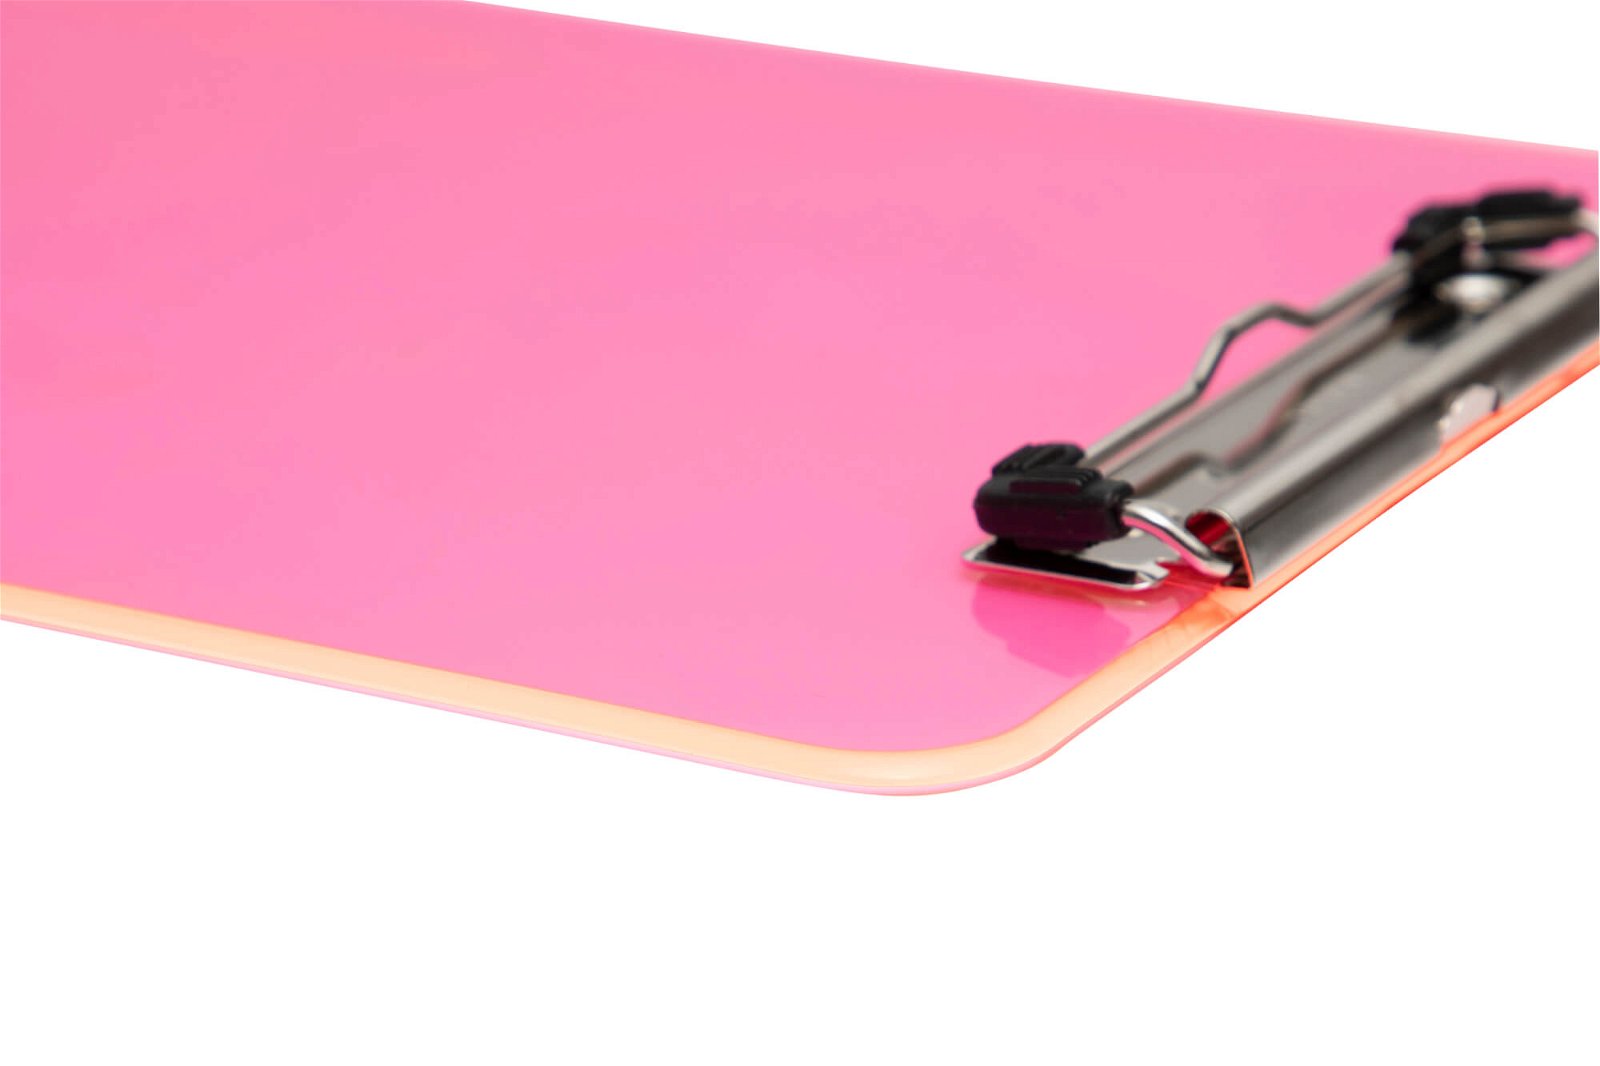 Schreibplatte MAULneon pink